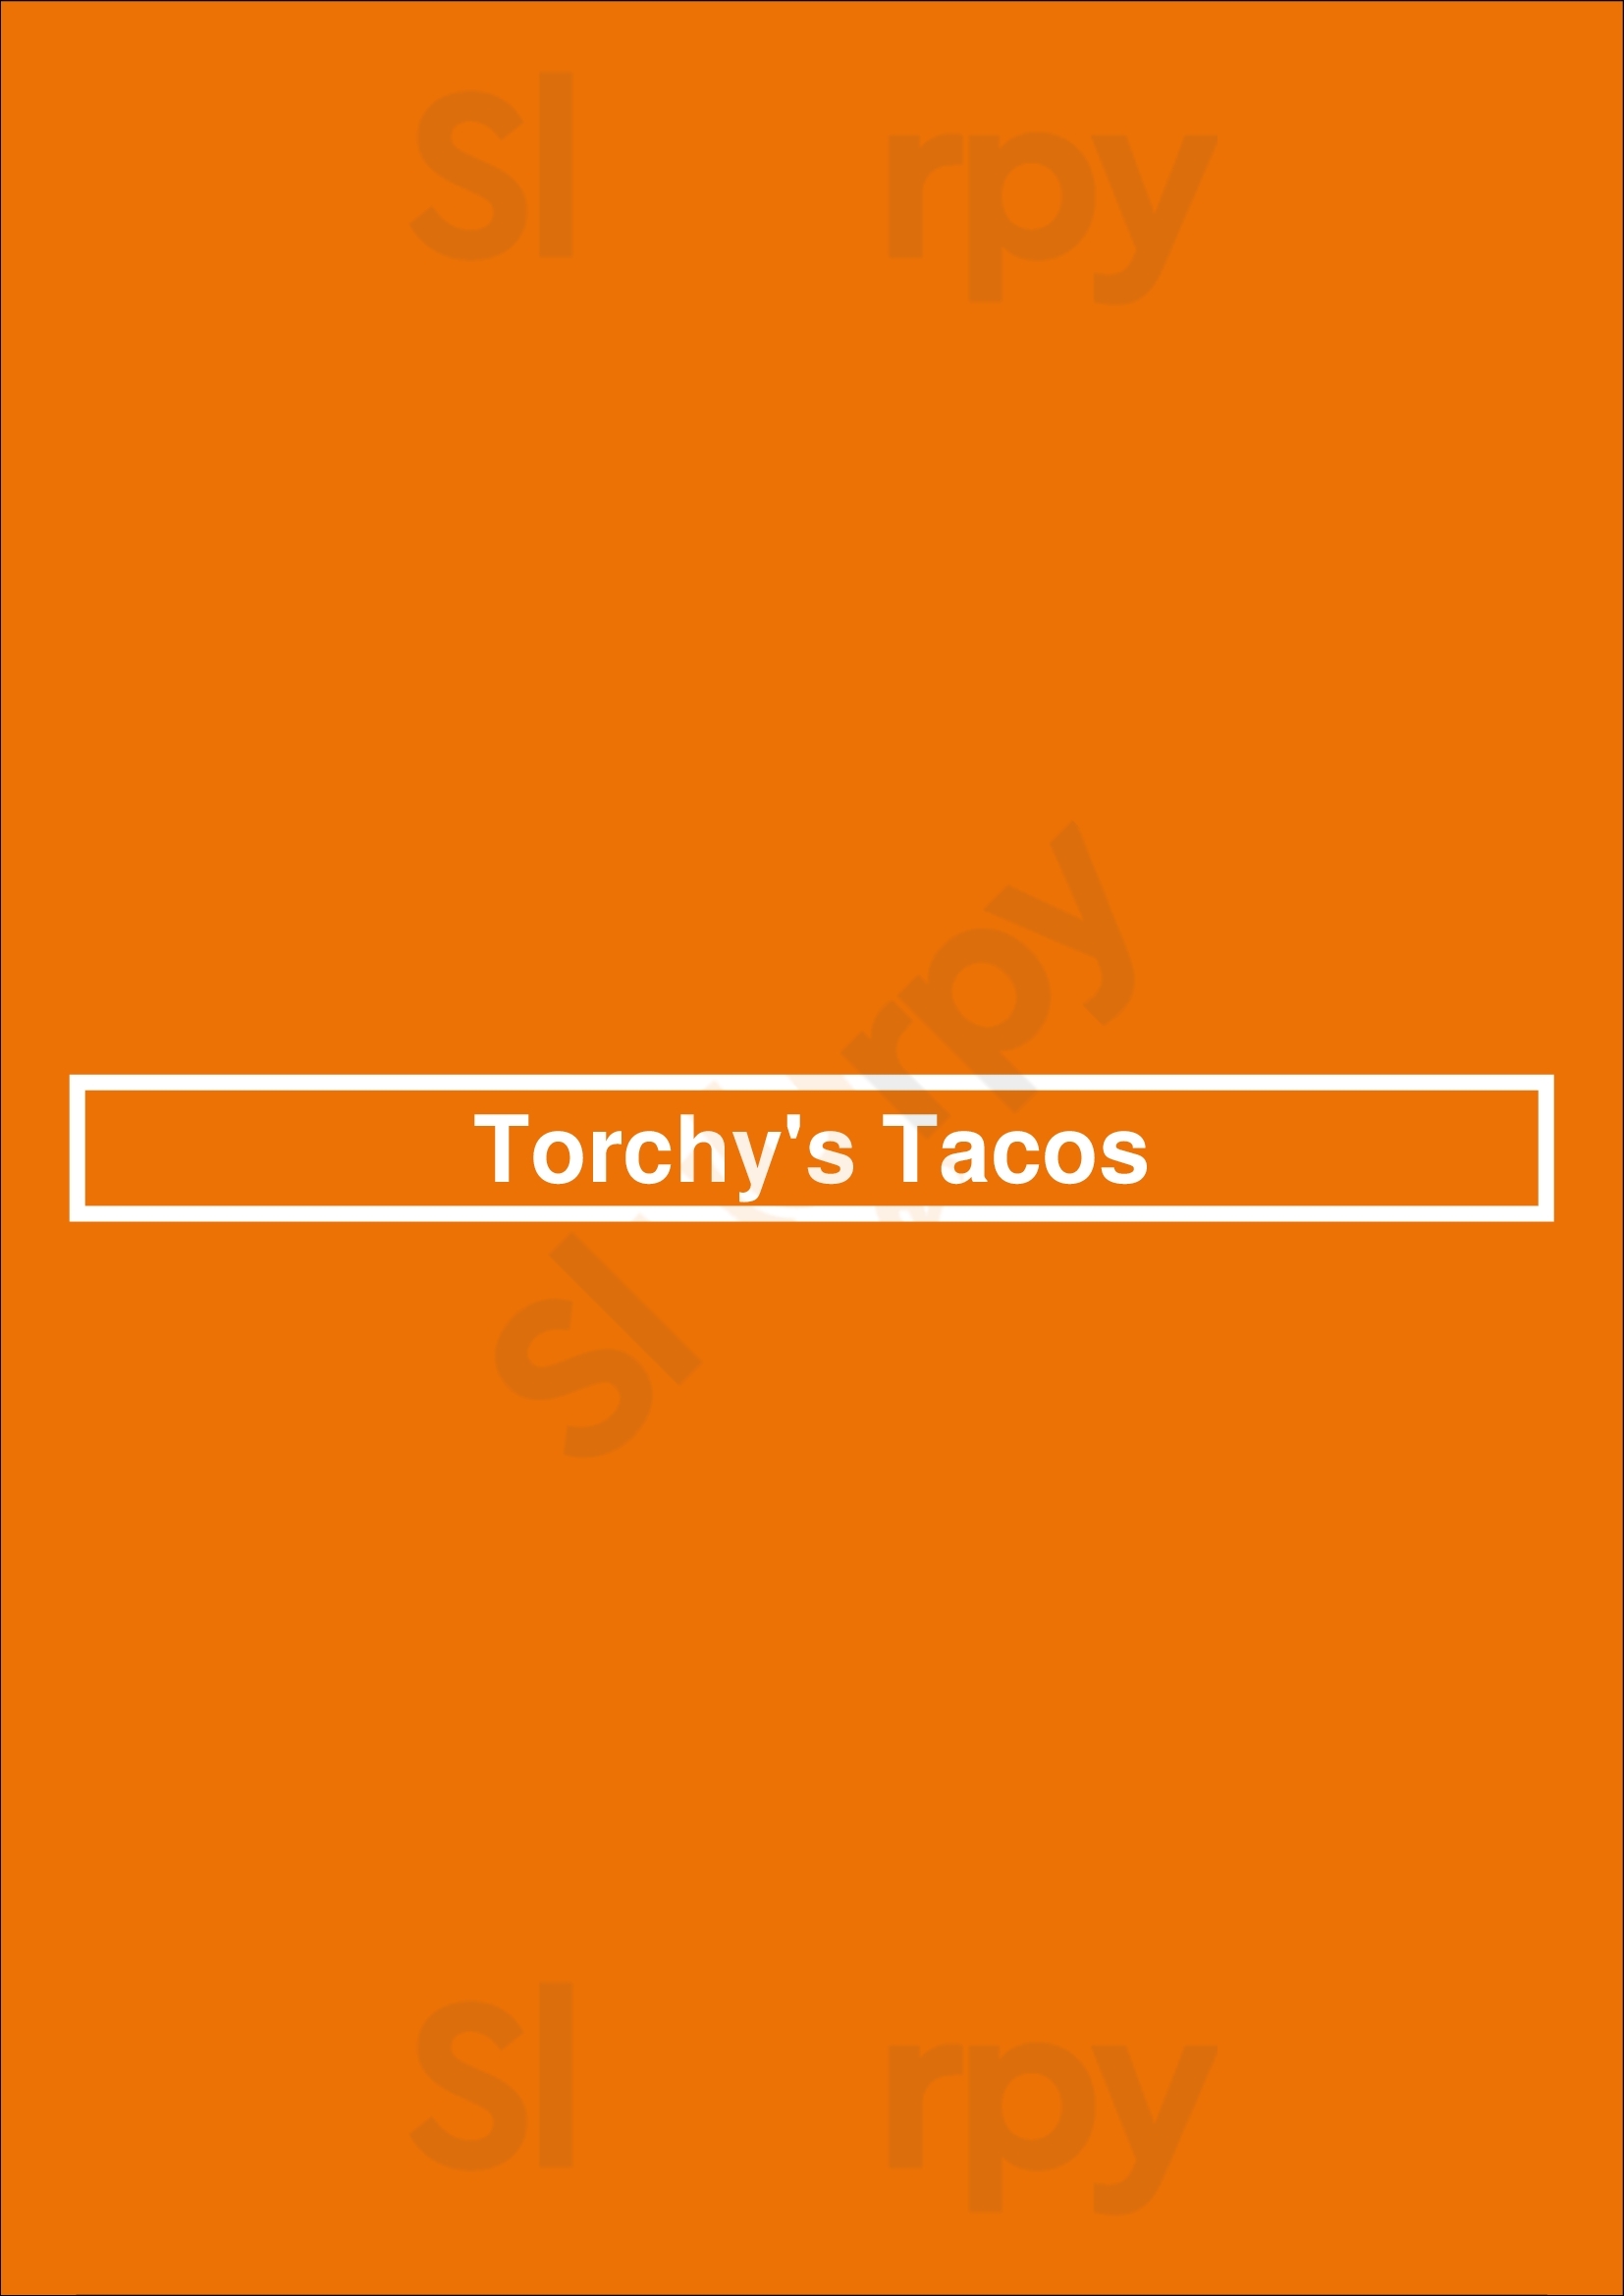 Torchys Tacos Austin Menu - 1